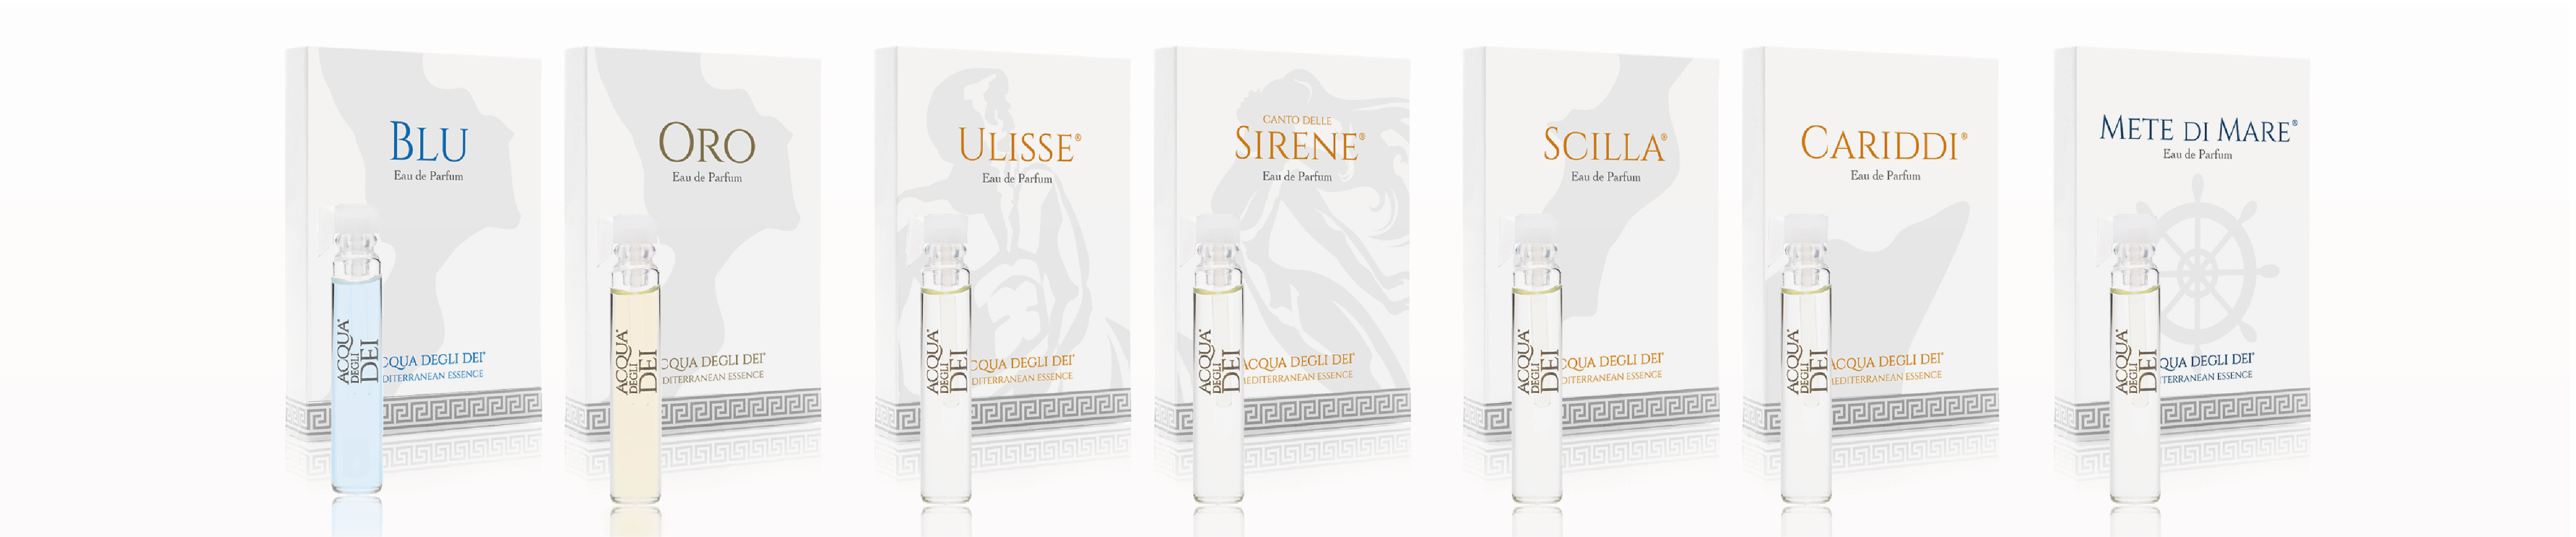 Entdecken Sie alle Düfte von Acqua degli Dei mit dem Set bestehend aus 7 Proben unseres Eau de Parfums 1.8 ml format